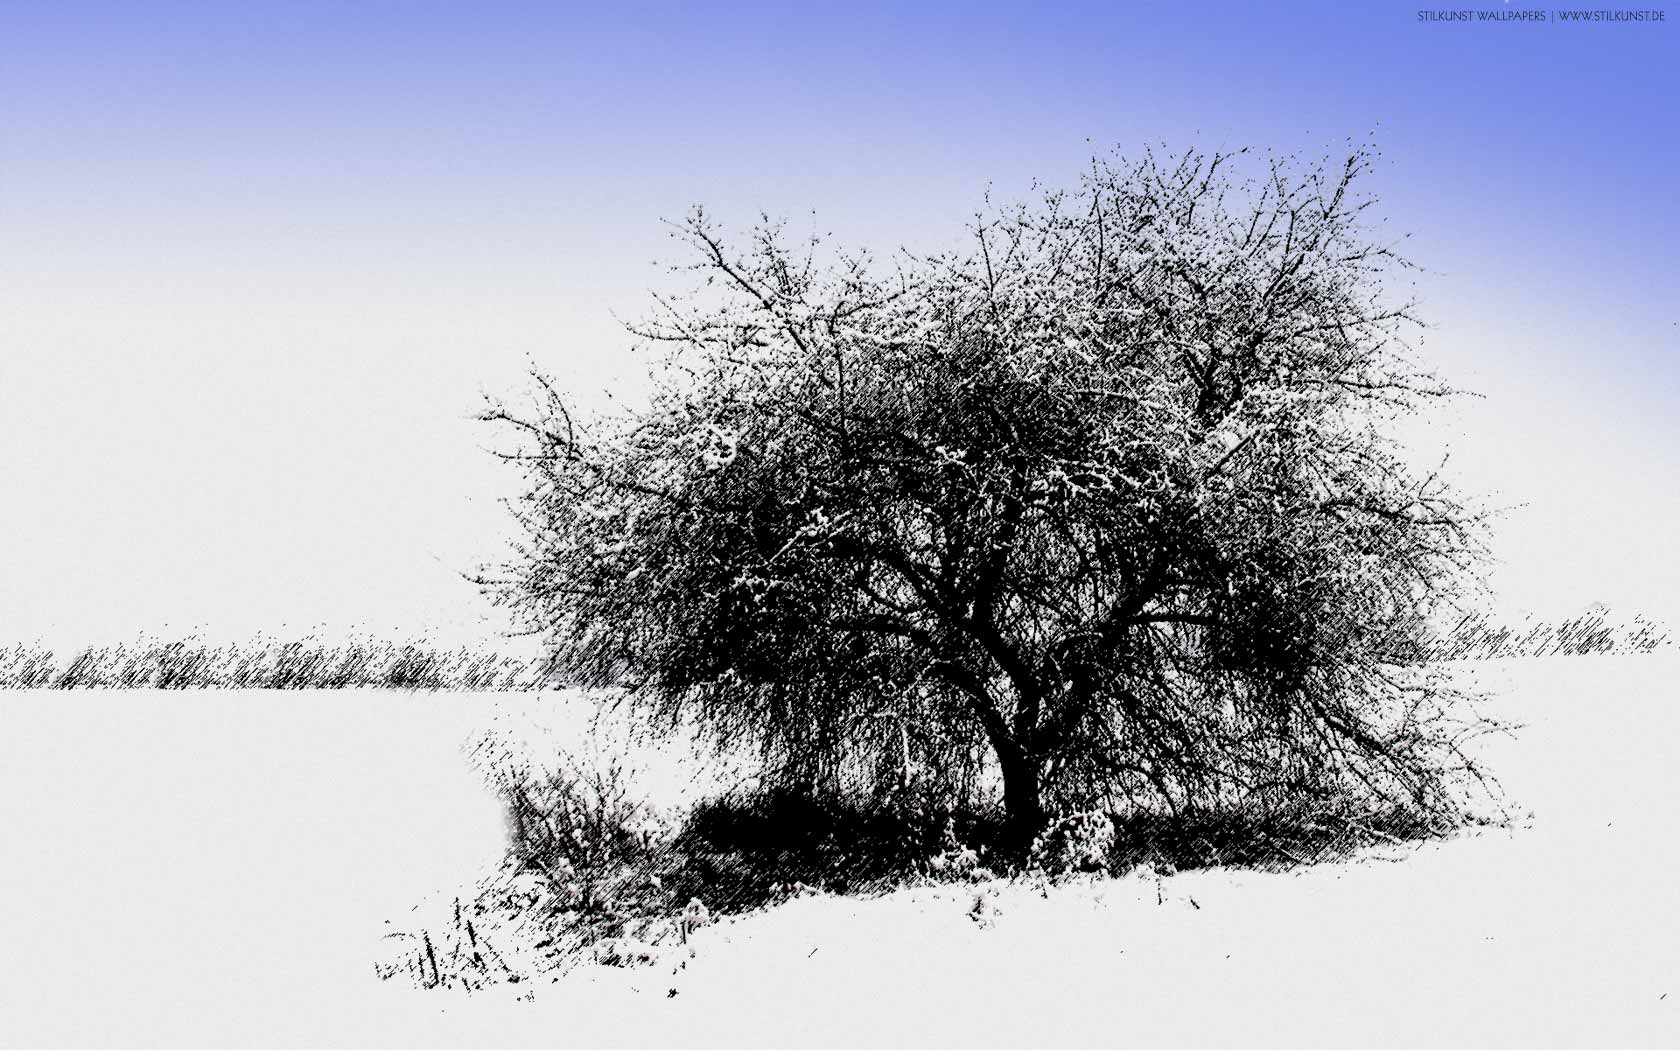 Winterlandschaft | 1680 x 1050px | Bild: ©by Sabrina | Reiner | www.stilkunst.de | Lizenz: CC BY-SA